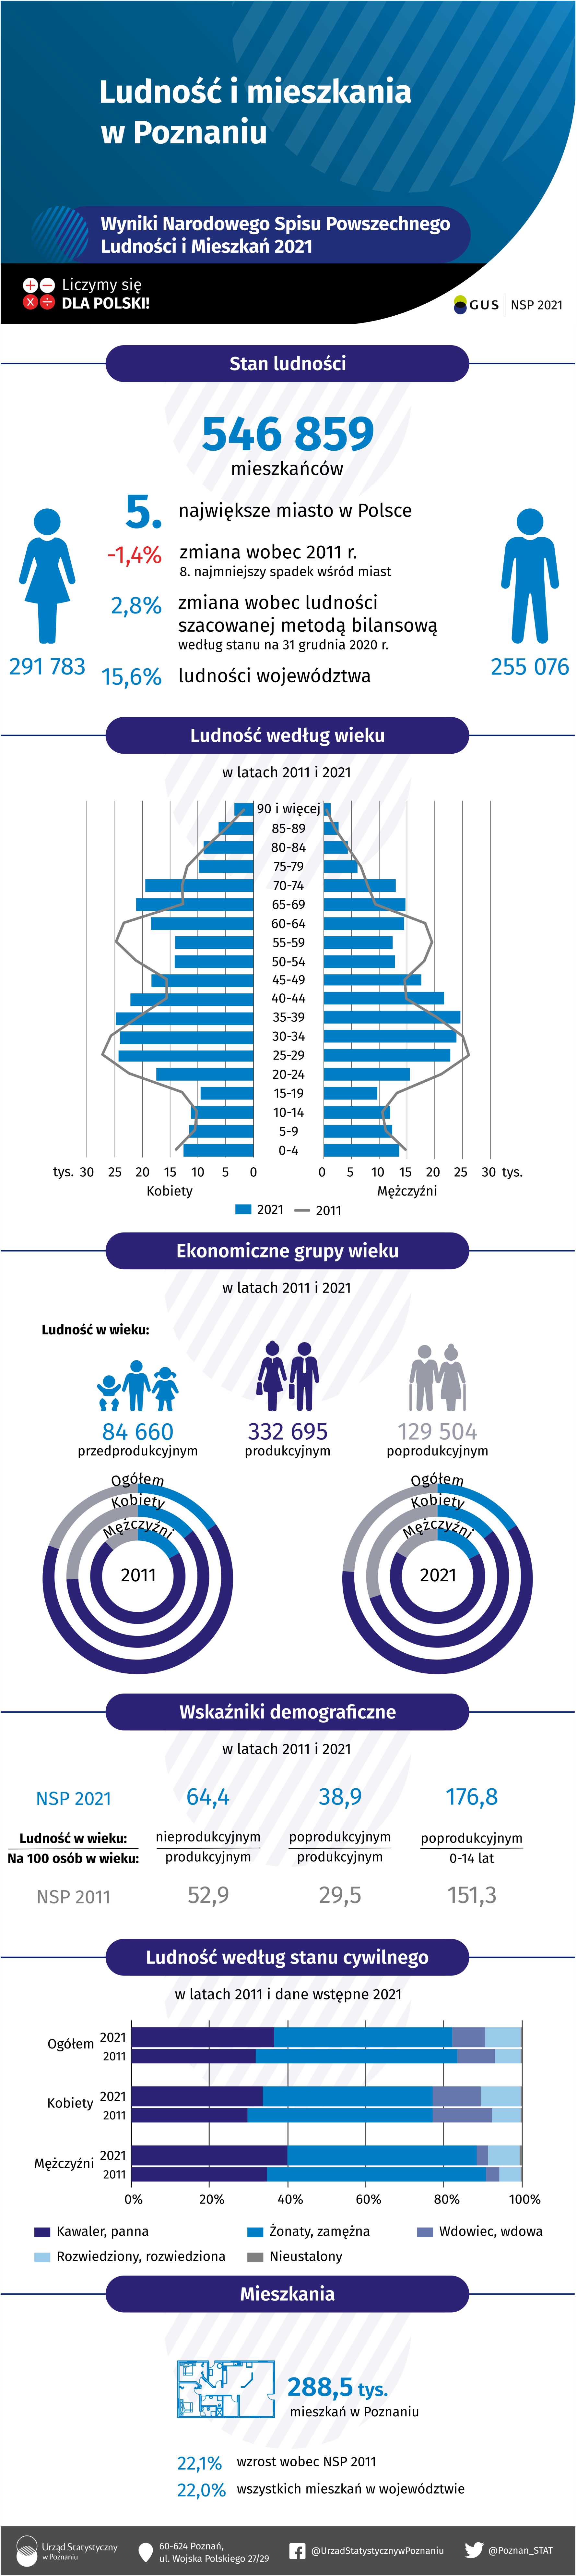 Infografika przedstawiająca wyniki ostateczne Narodowego Spisu Powszechnego Ludności i Mieszkań 2021 w Poznaniu